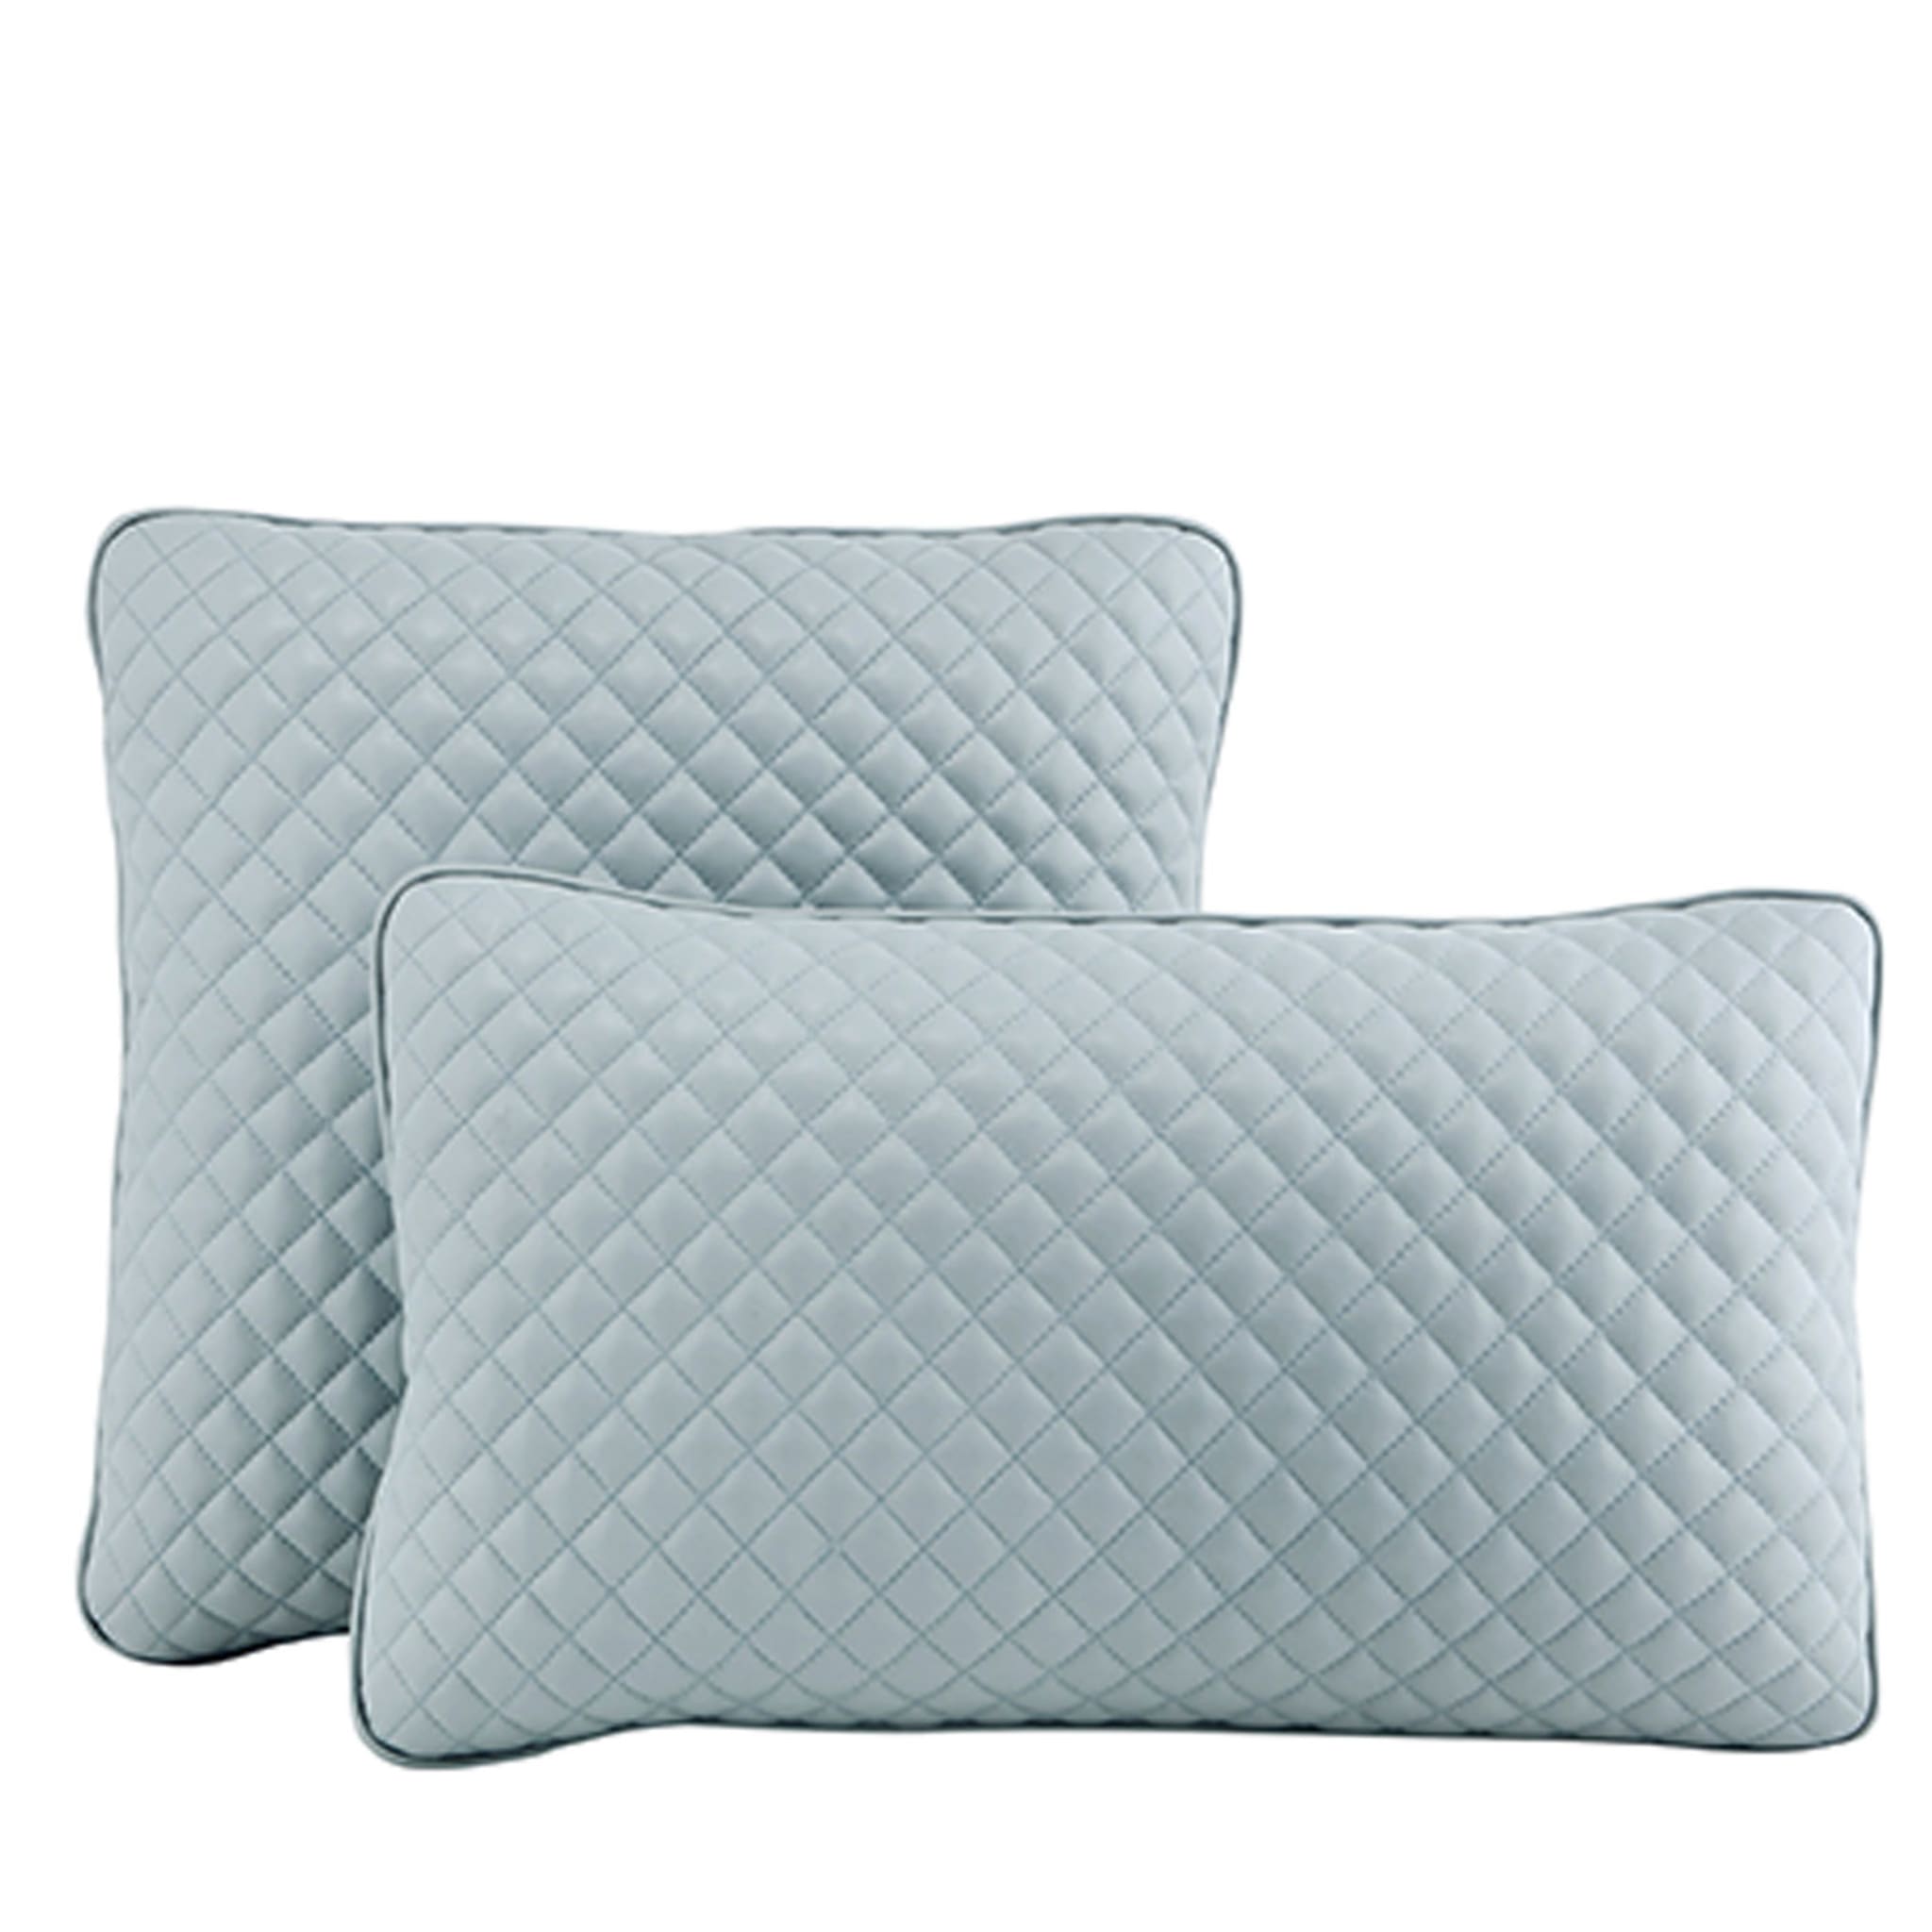 Set of 2 Oniro Diamonds Cushions - Main view